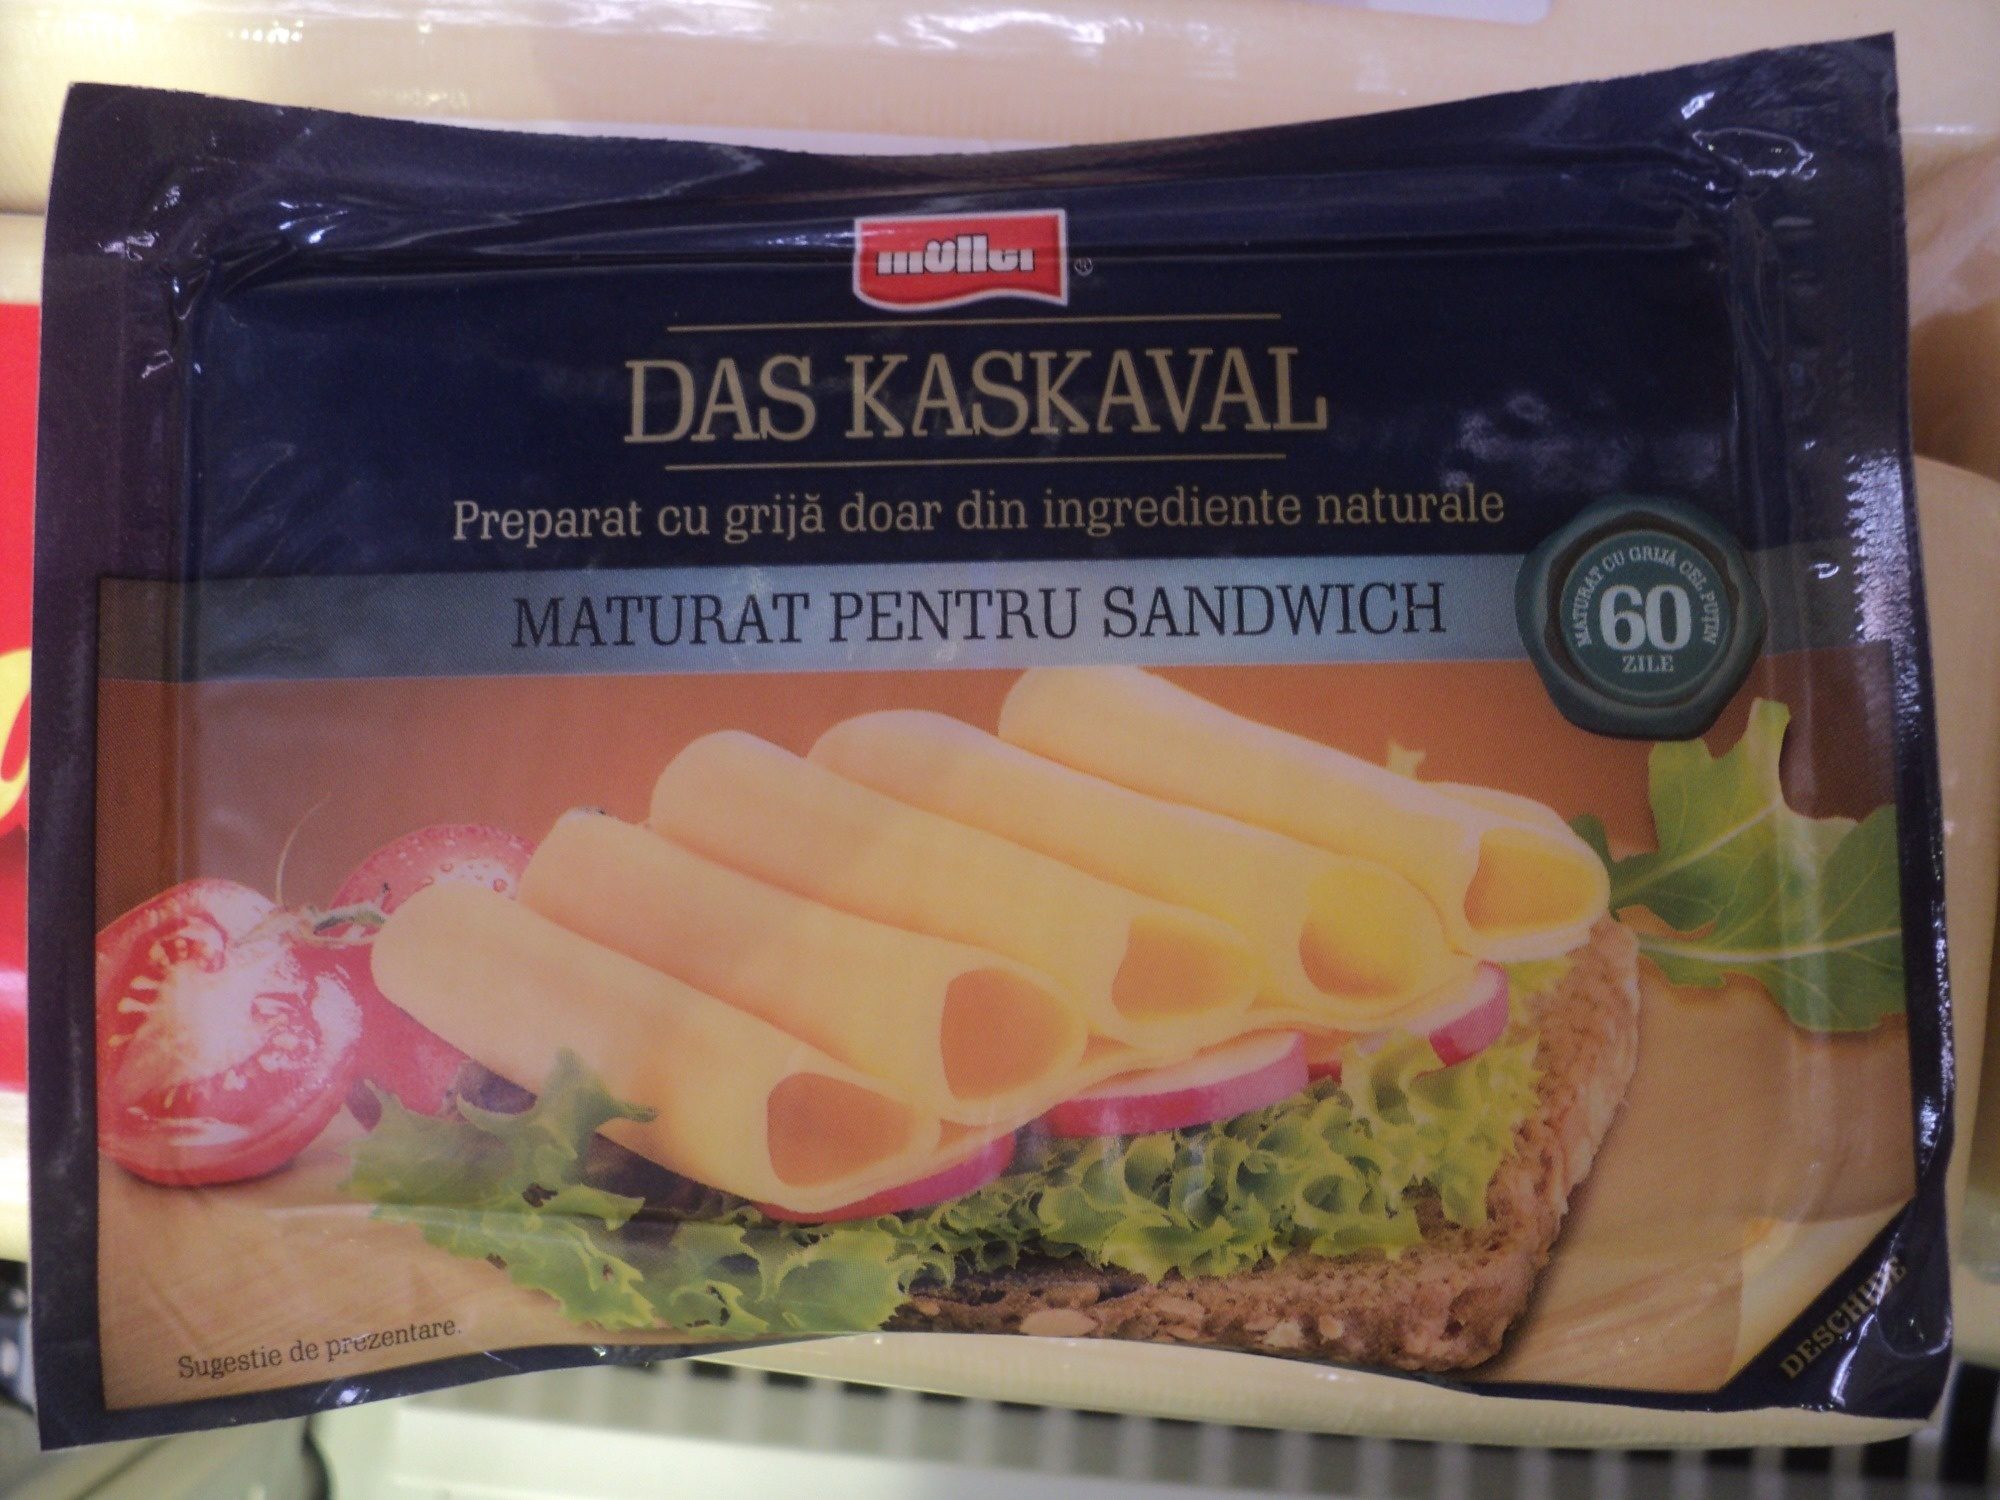 Muller Cascaval maturat pentru sandwich - Product - ro